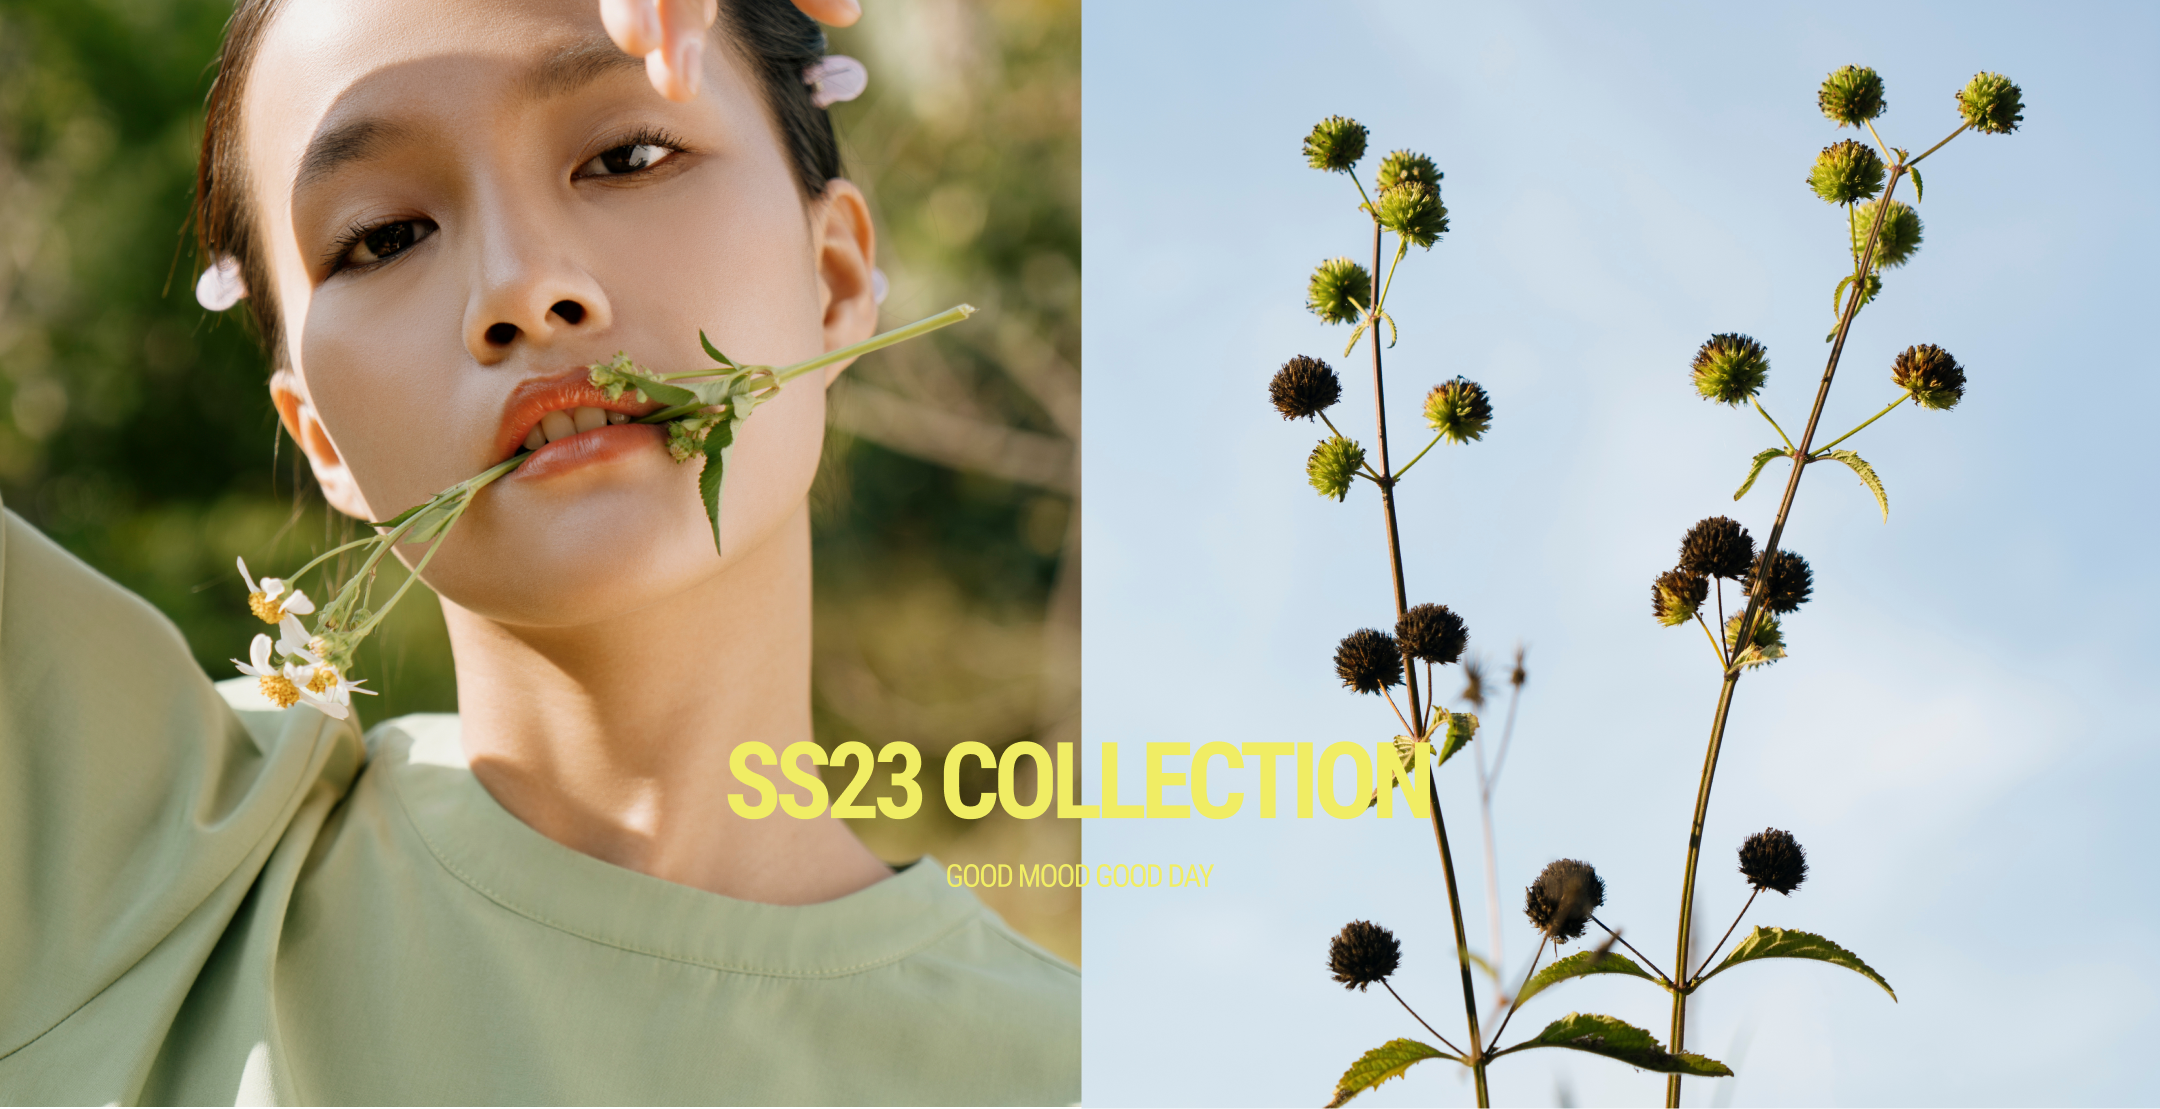 SS23 Collection women - BST Quần áo thời trang mùa hè